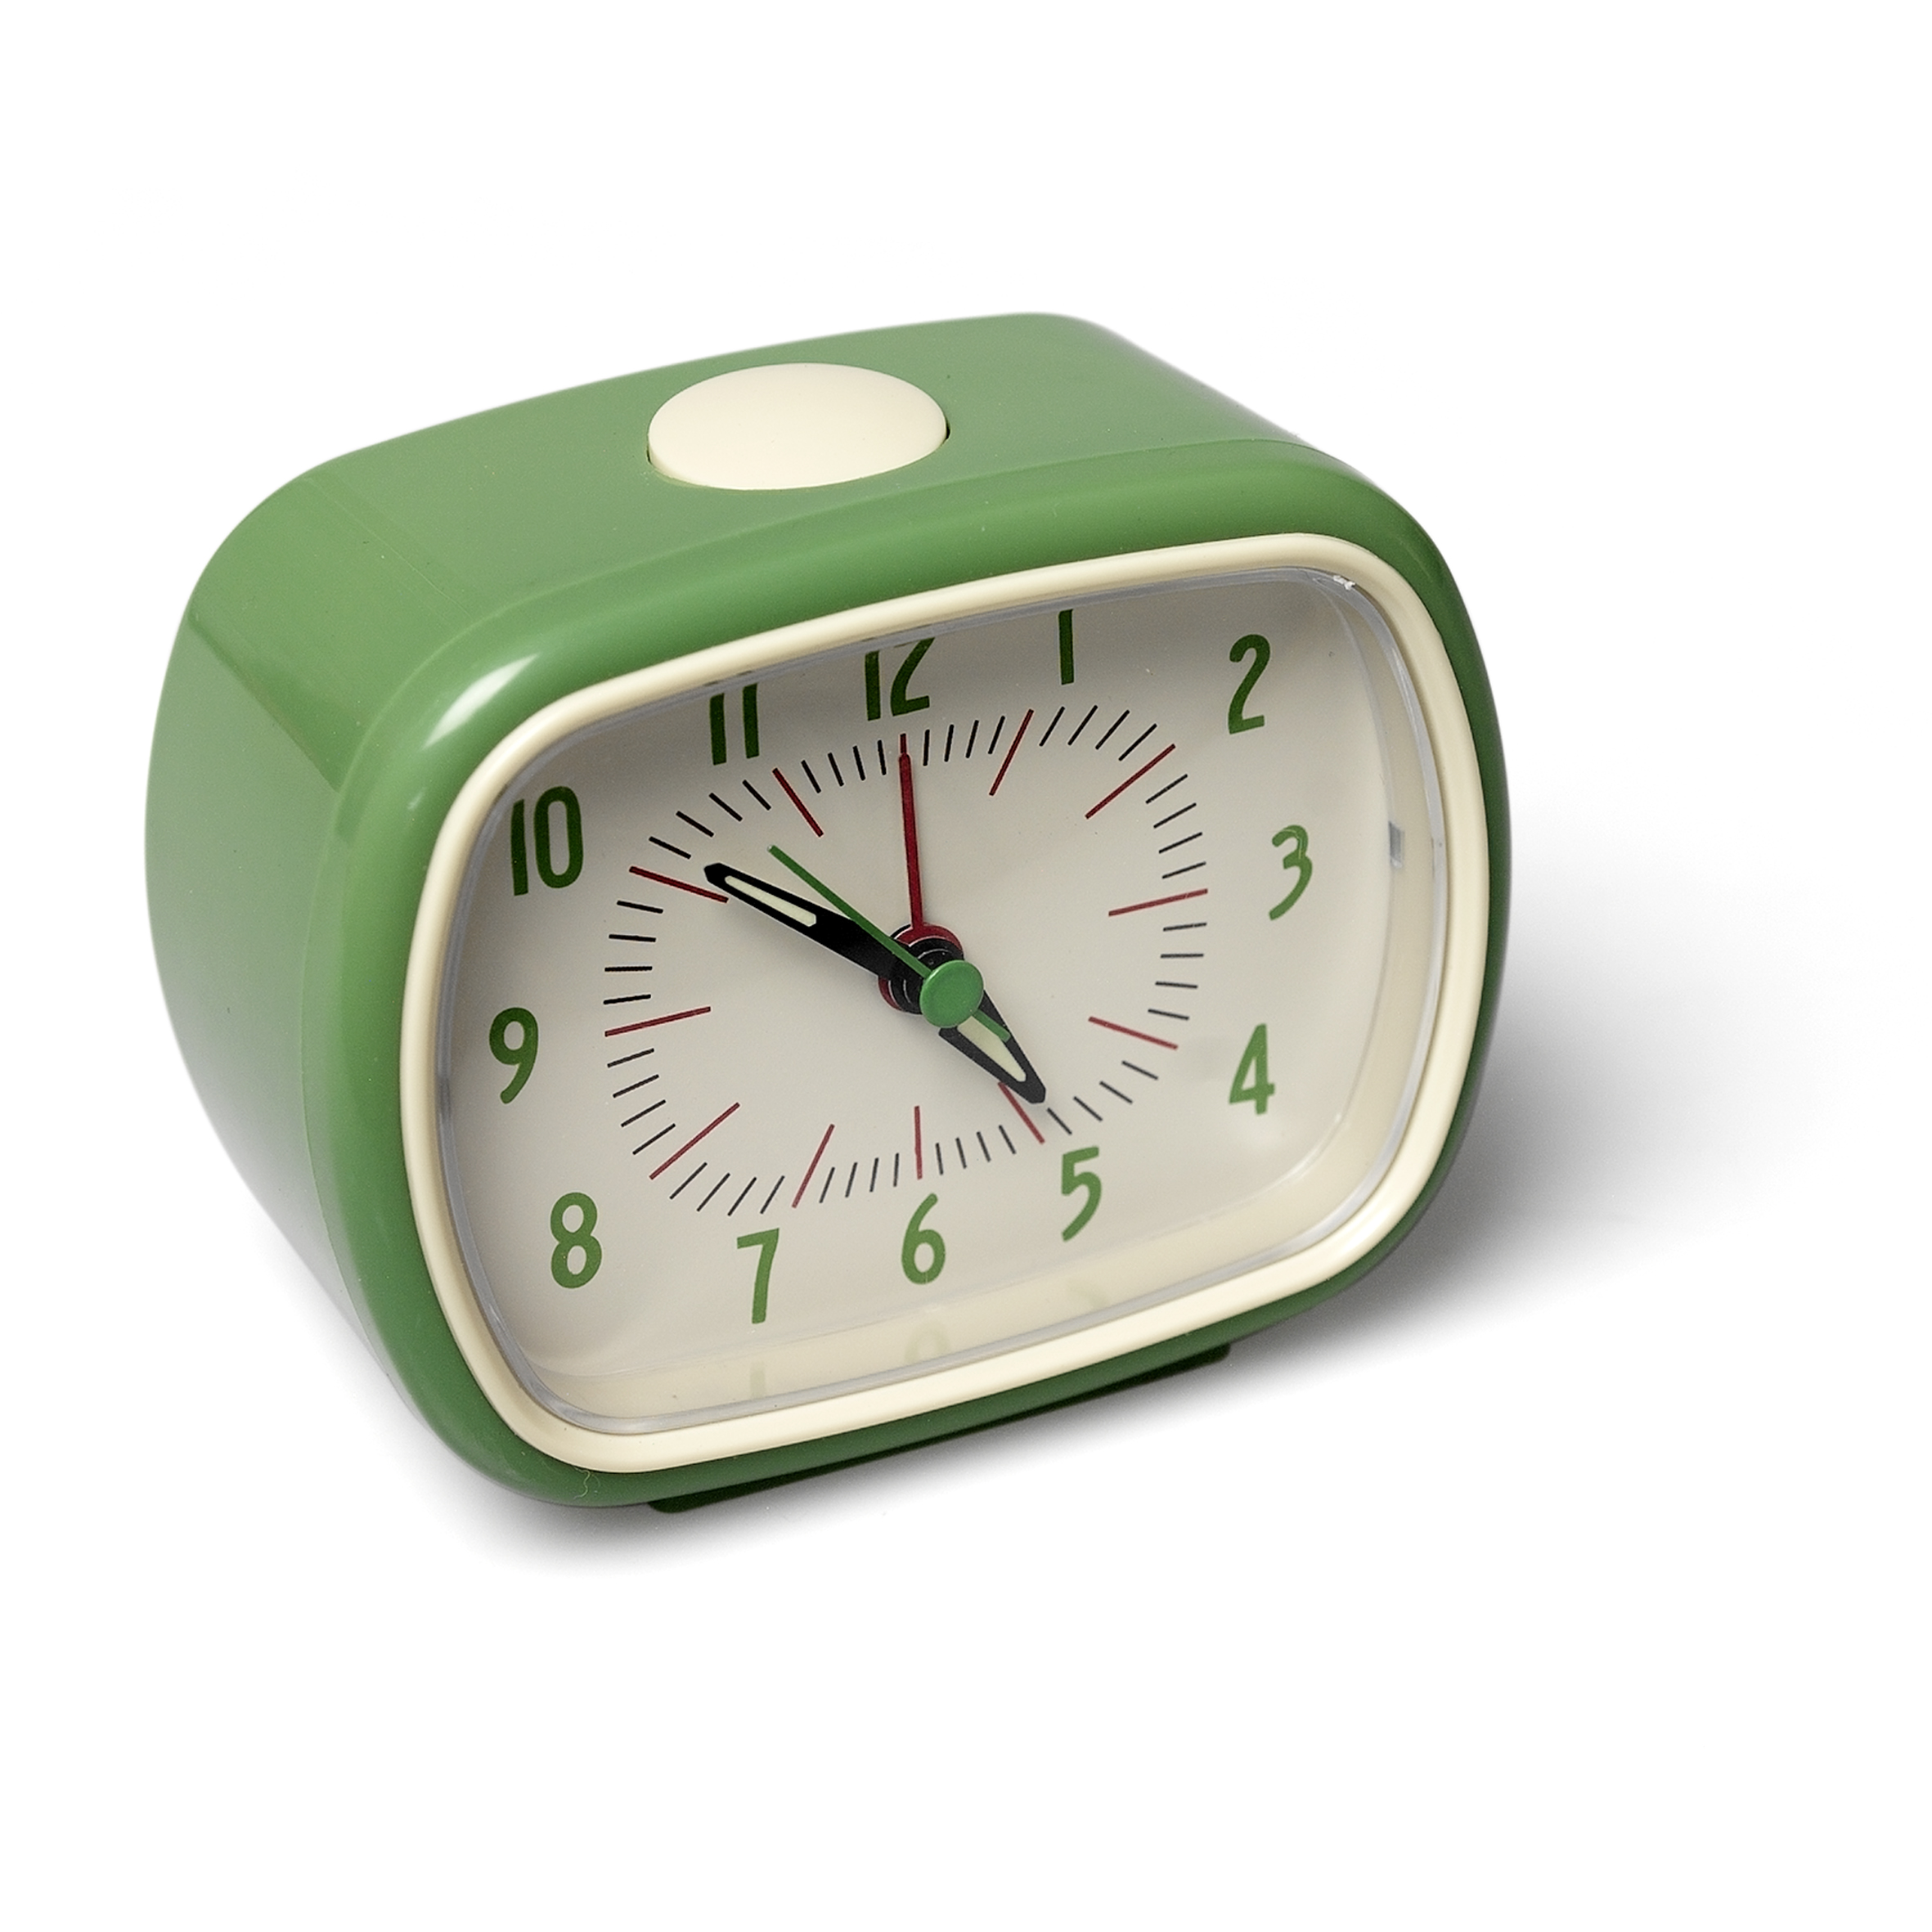 Retro Green Alarm Clock | Rex London (dotcomgiftshop)